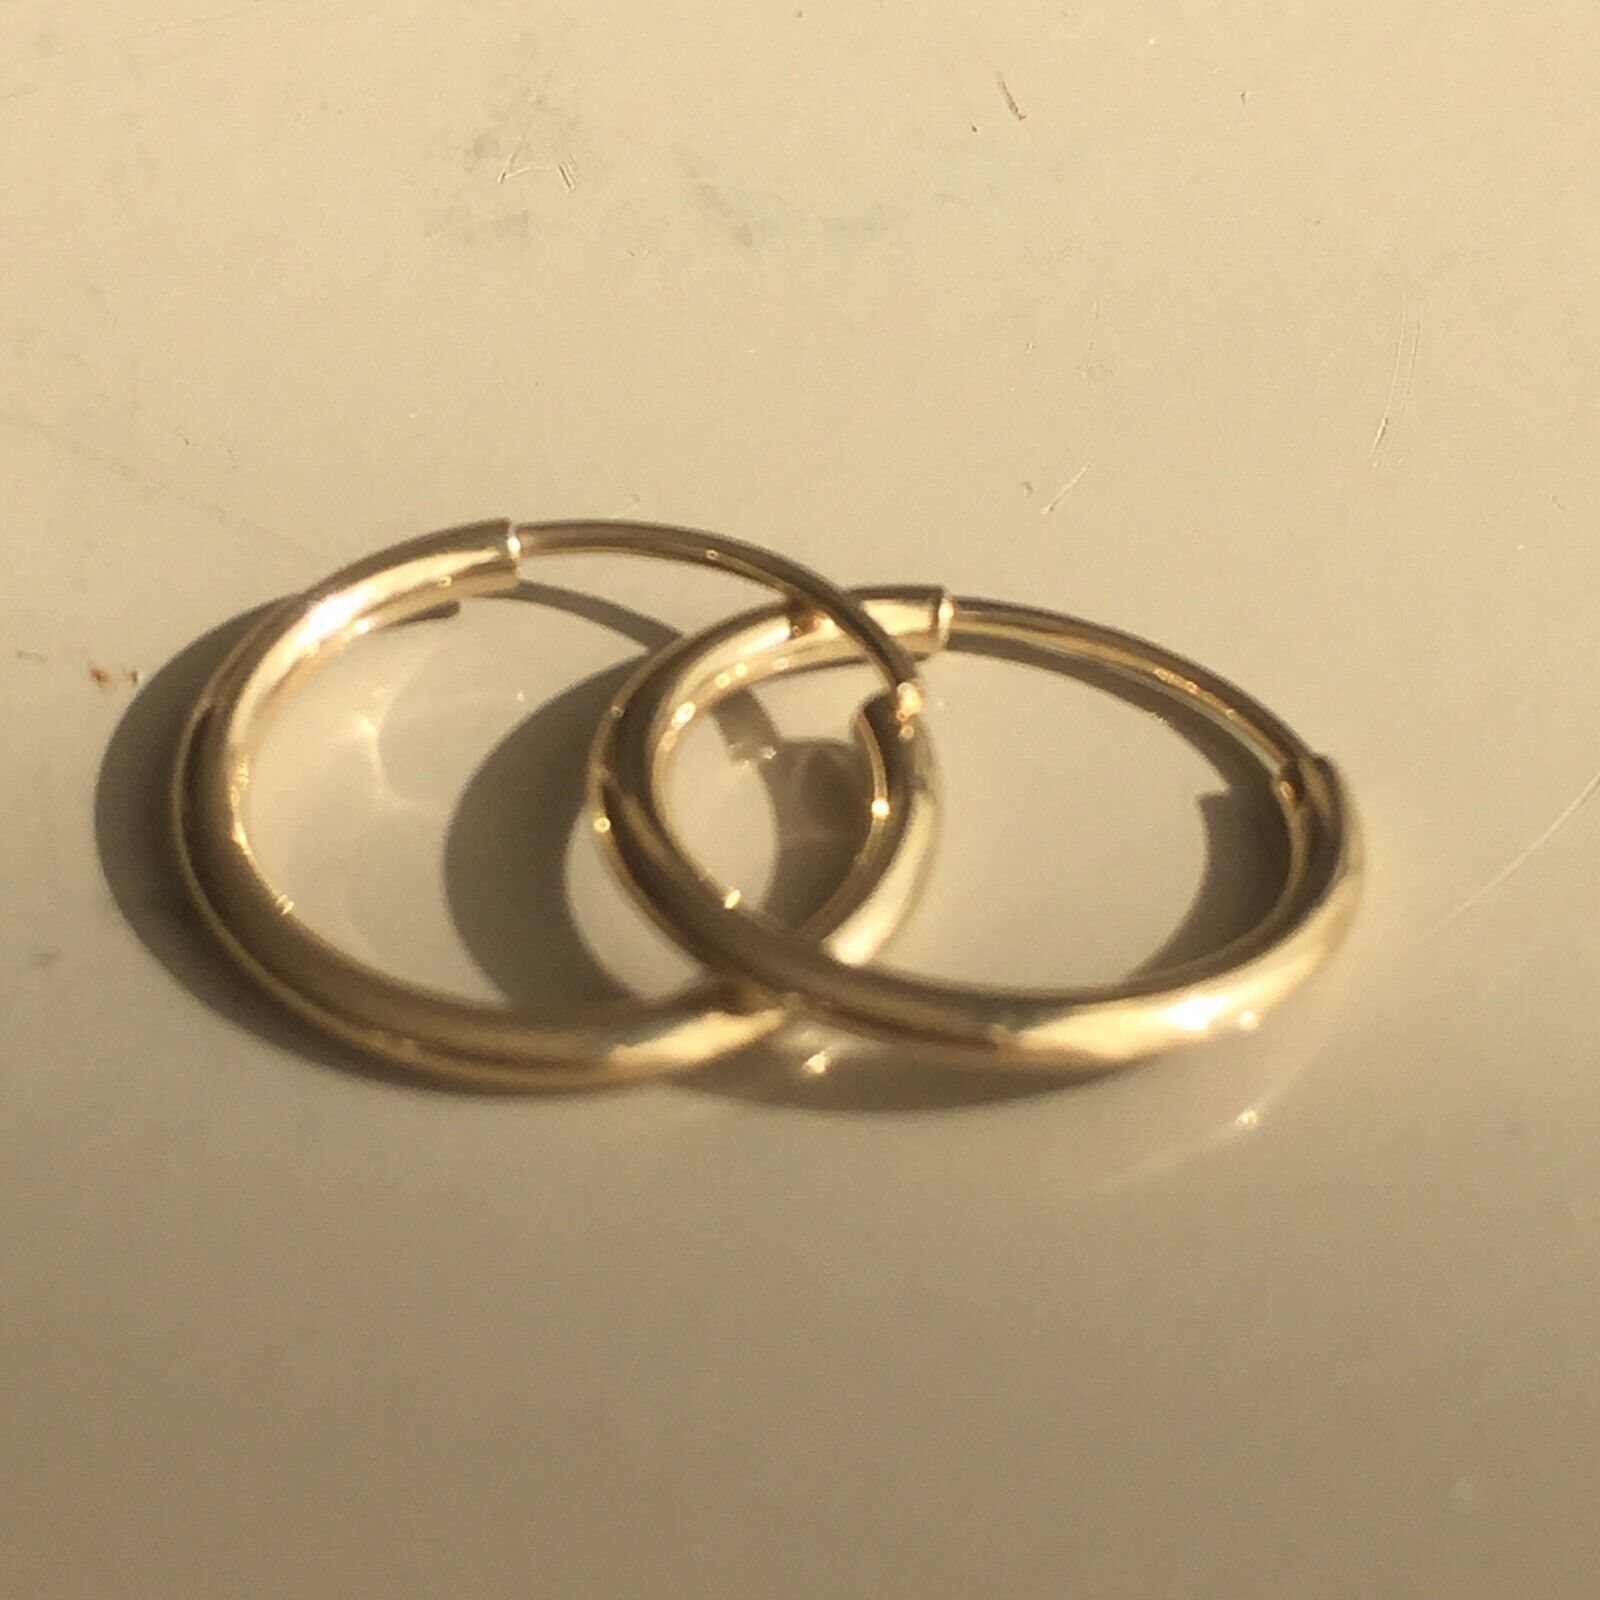 Pair of 10-11 mm, 14K Yellow Solid Gold Seamless Hoop Earrings marked 14K  Nobel Gems